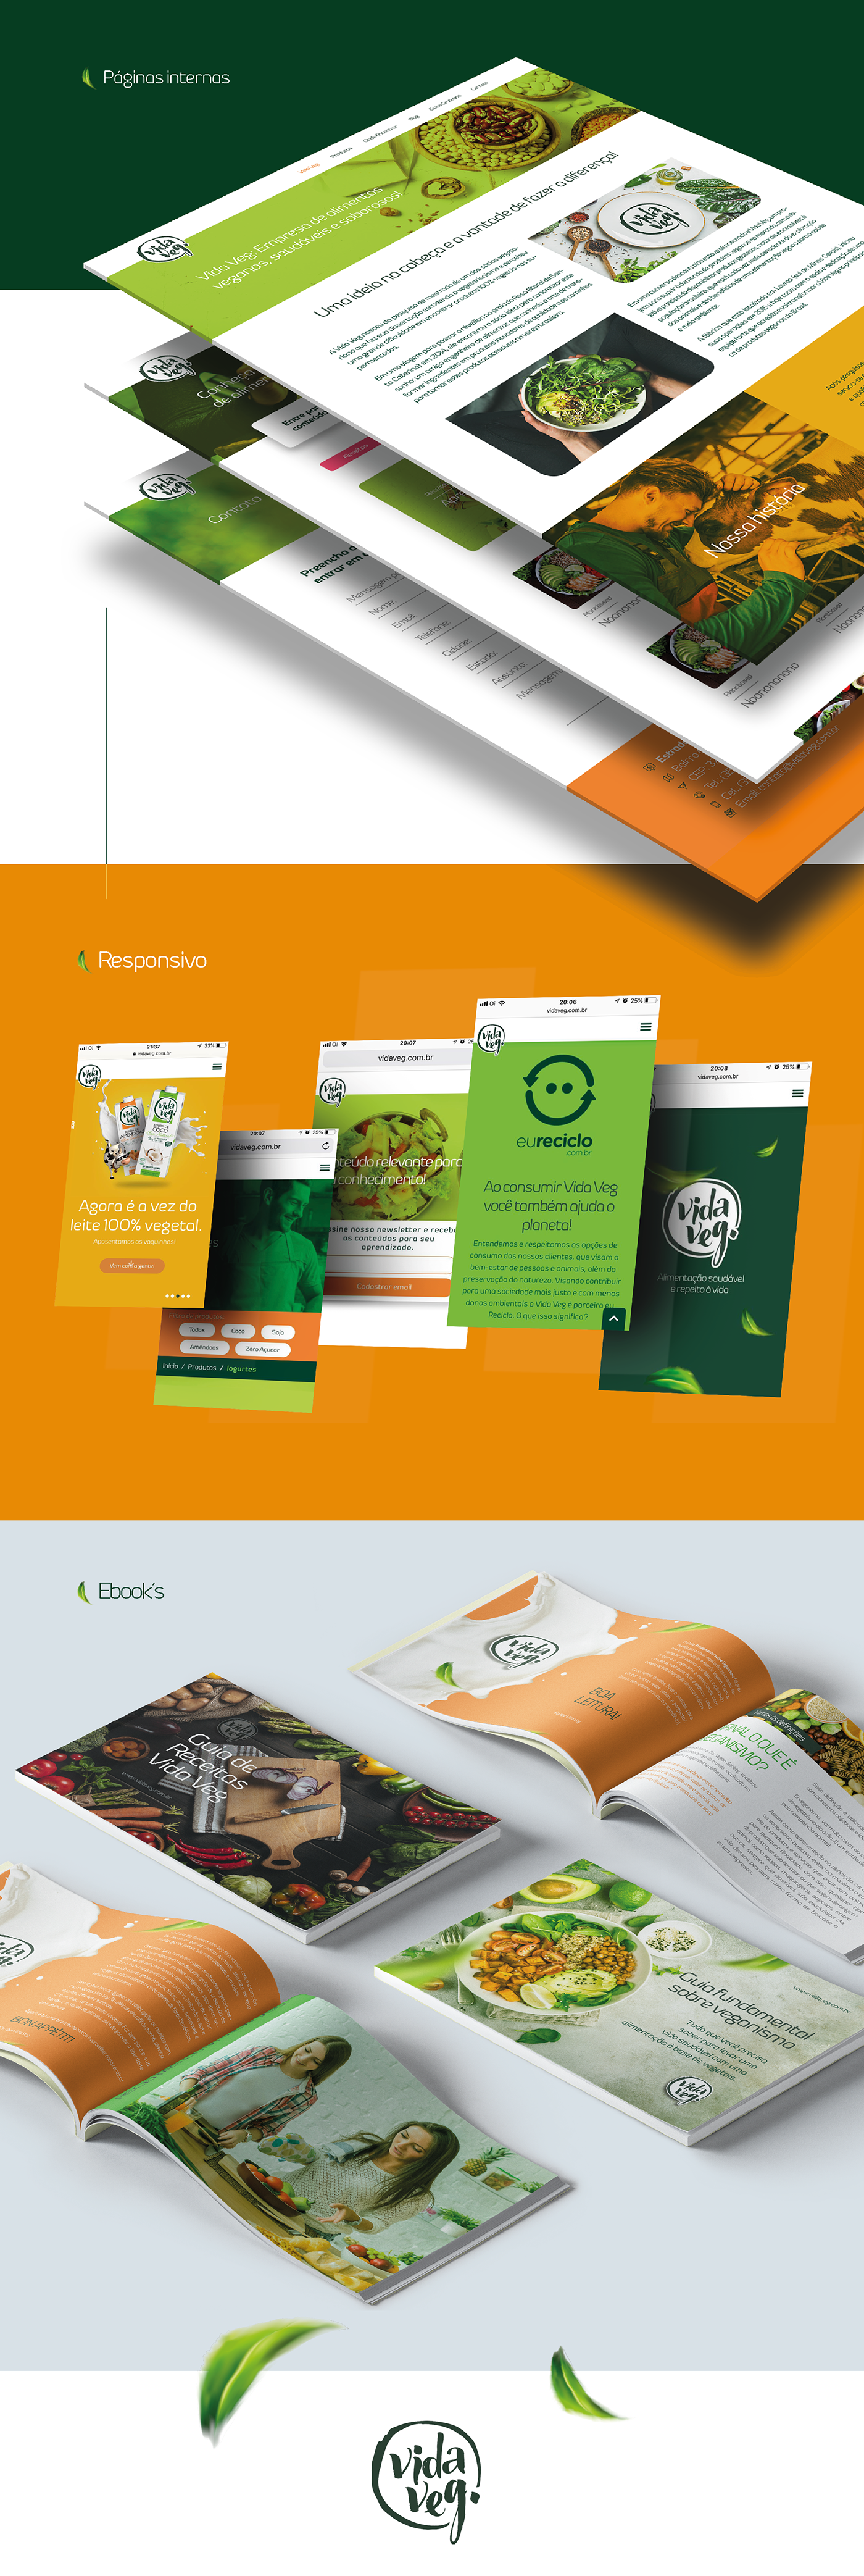 identidade visual visual identity Webdesign site ux UI redes socias vegan veganismo alimentação